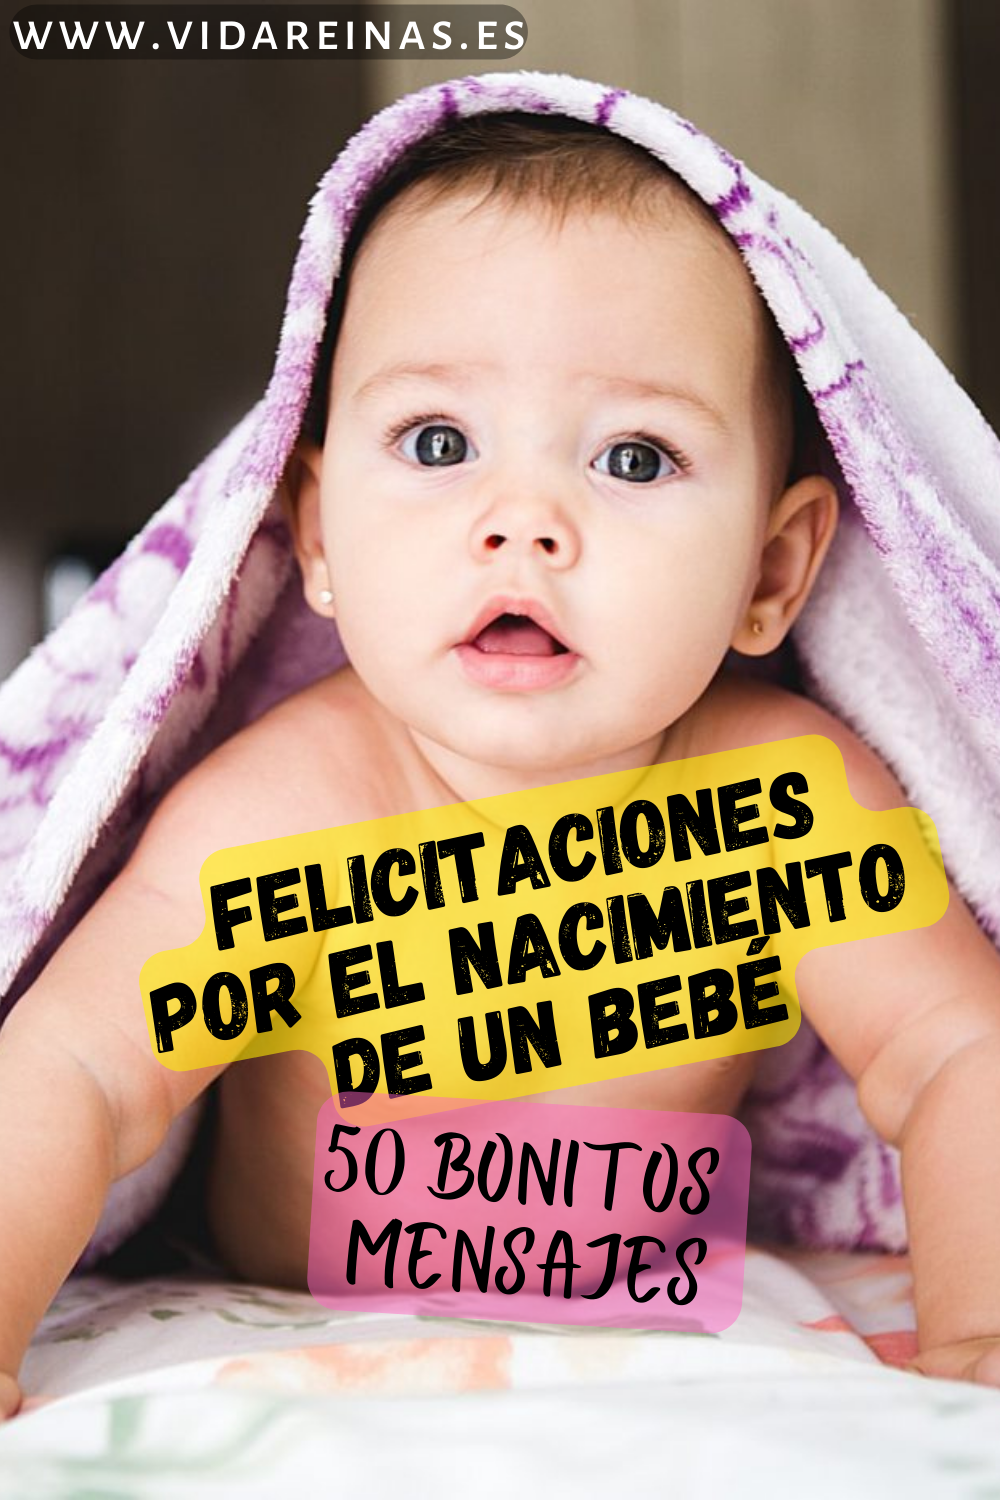 Felicitaciones Por El Nacimiento De Un Bebé 50 Bonitos Mensajes Vida Reinas 0339